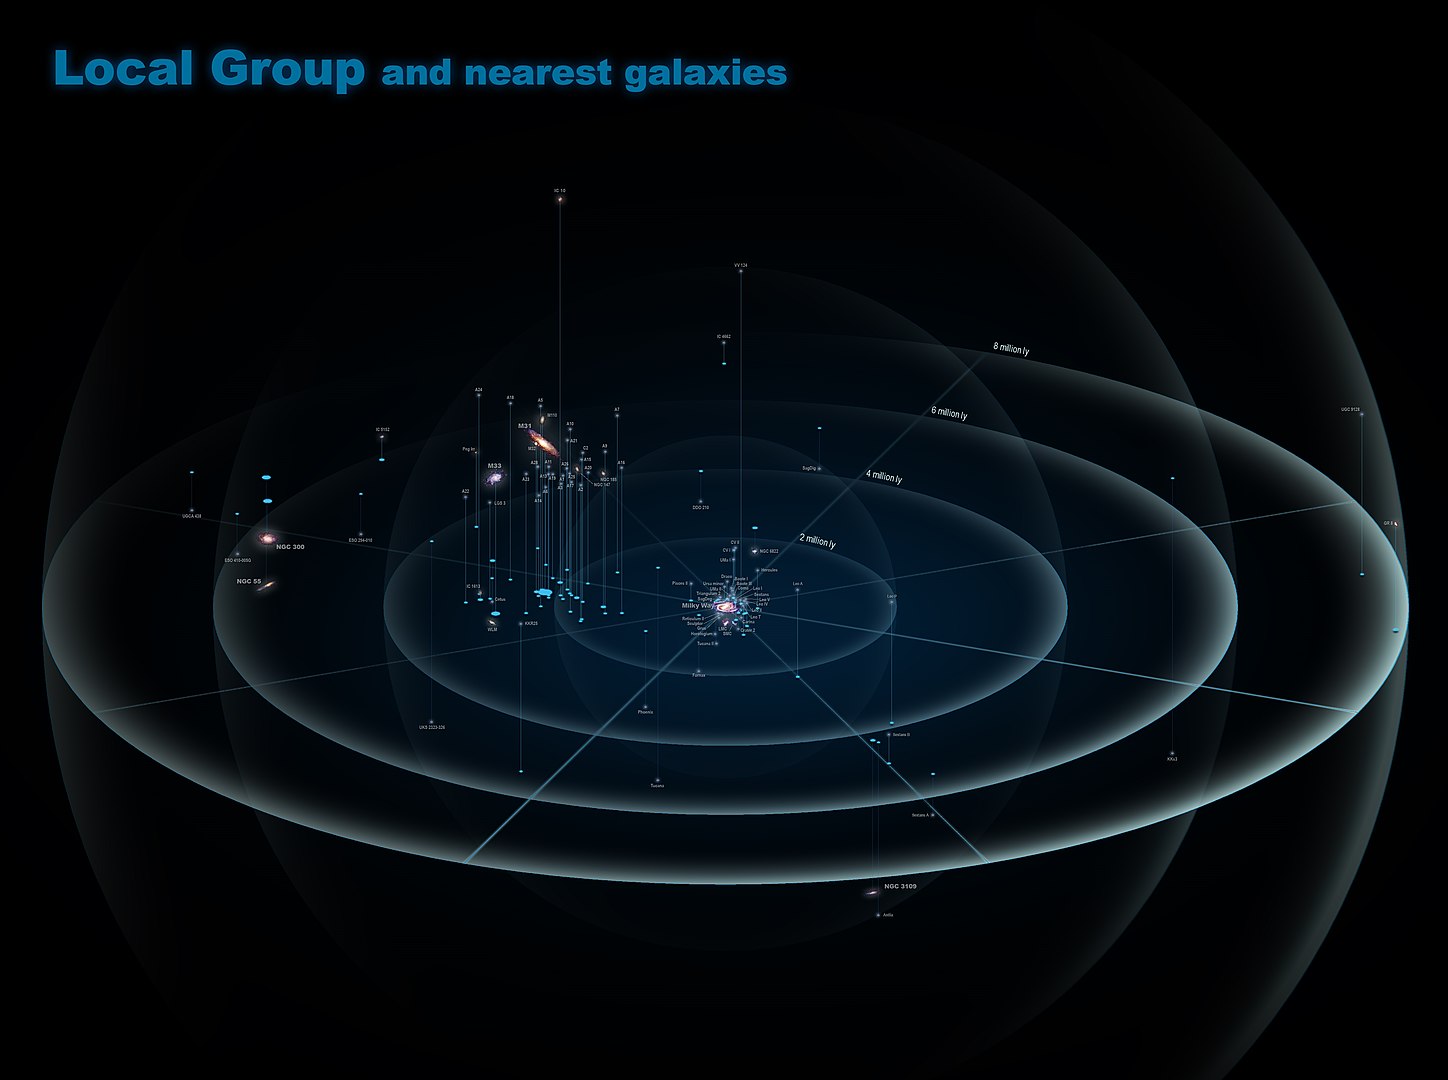 Esta ilustración muestra el grupo local. La Vía Láctea está en el centro, y Andrómeda (M31) es la galaxia roja arriba ya la izquierda. Eventualmente, los dos se fusionarán, junto con todos sus satélites, en una gigantesca galaxia elíptica. Crédito de imagen: por Antonio Ciccolella - Trabajo propio, CC BY-SA 4.0, https://commons.wikimedia.org/w/index.php?curid=50409931